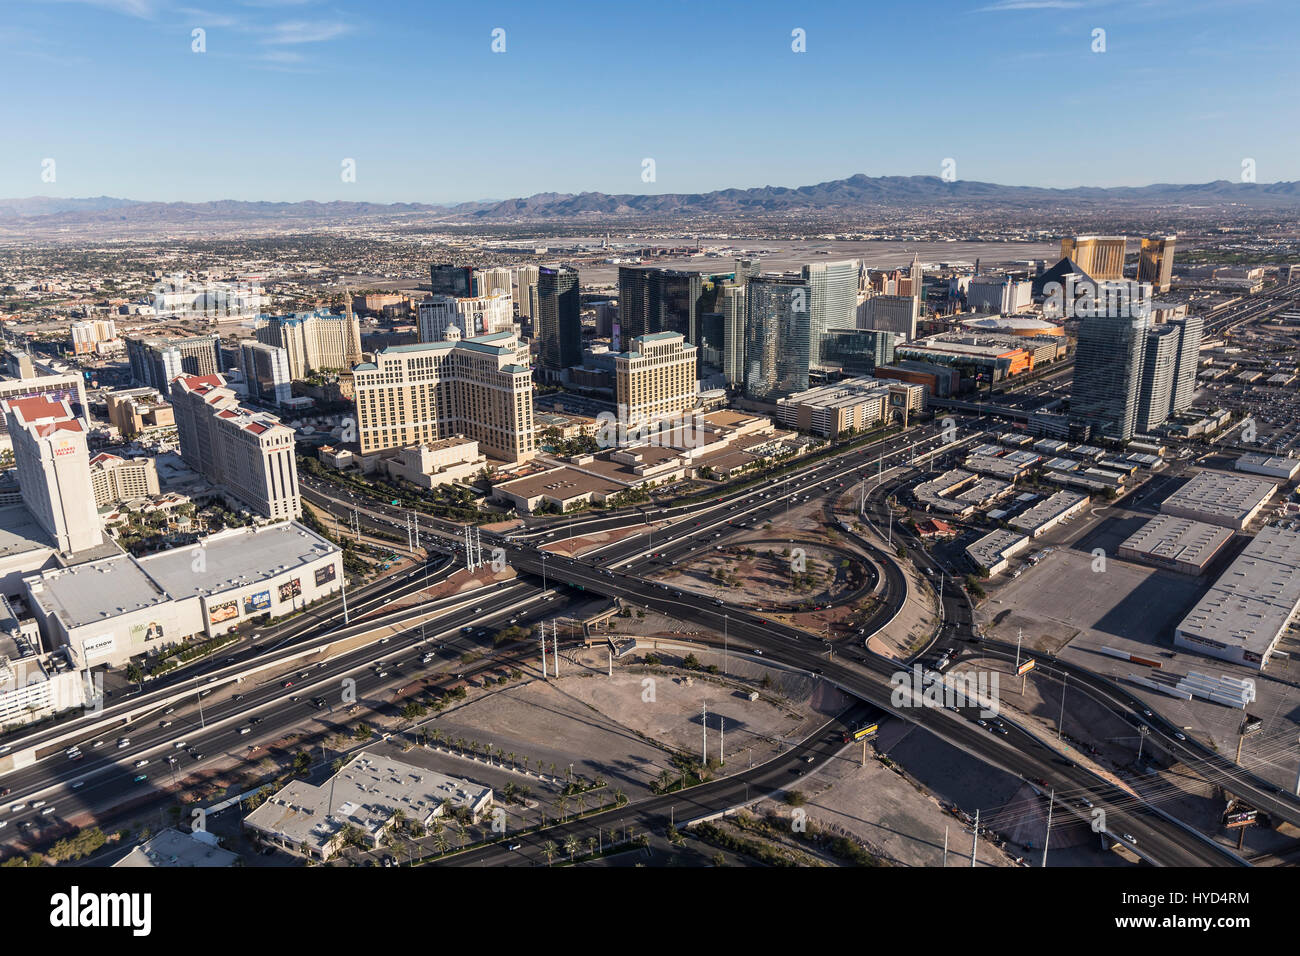 Las Vegas, Nevada, USA - Mars 13, 2017 : Vue aérienne de casino resorts près de Flamingo Ave et Las Vegas Boulevard dans le sud du Nevada. Banque D'Images